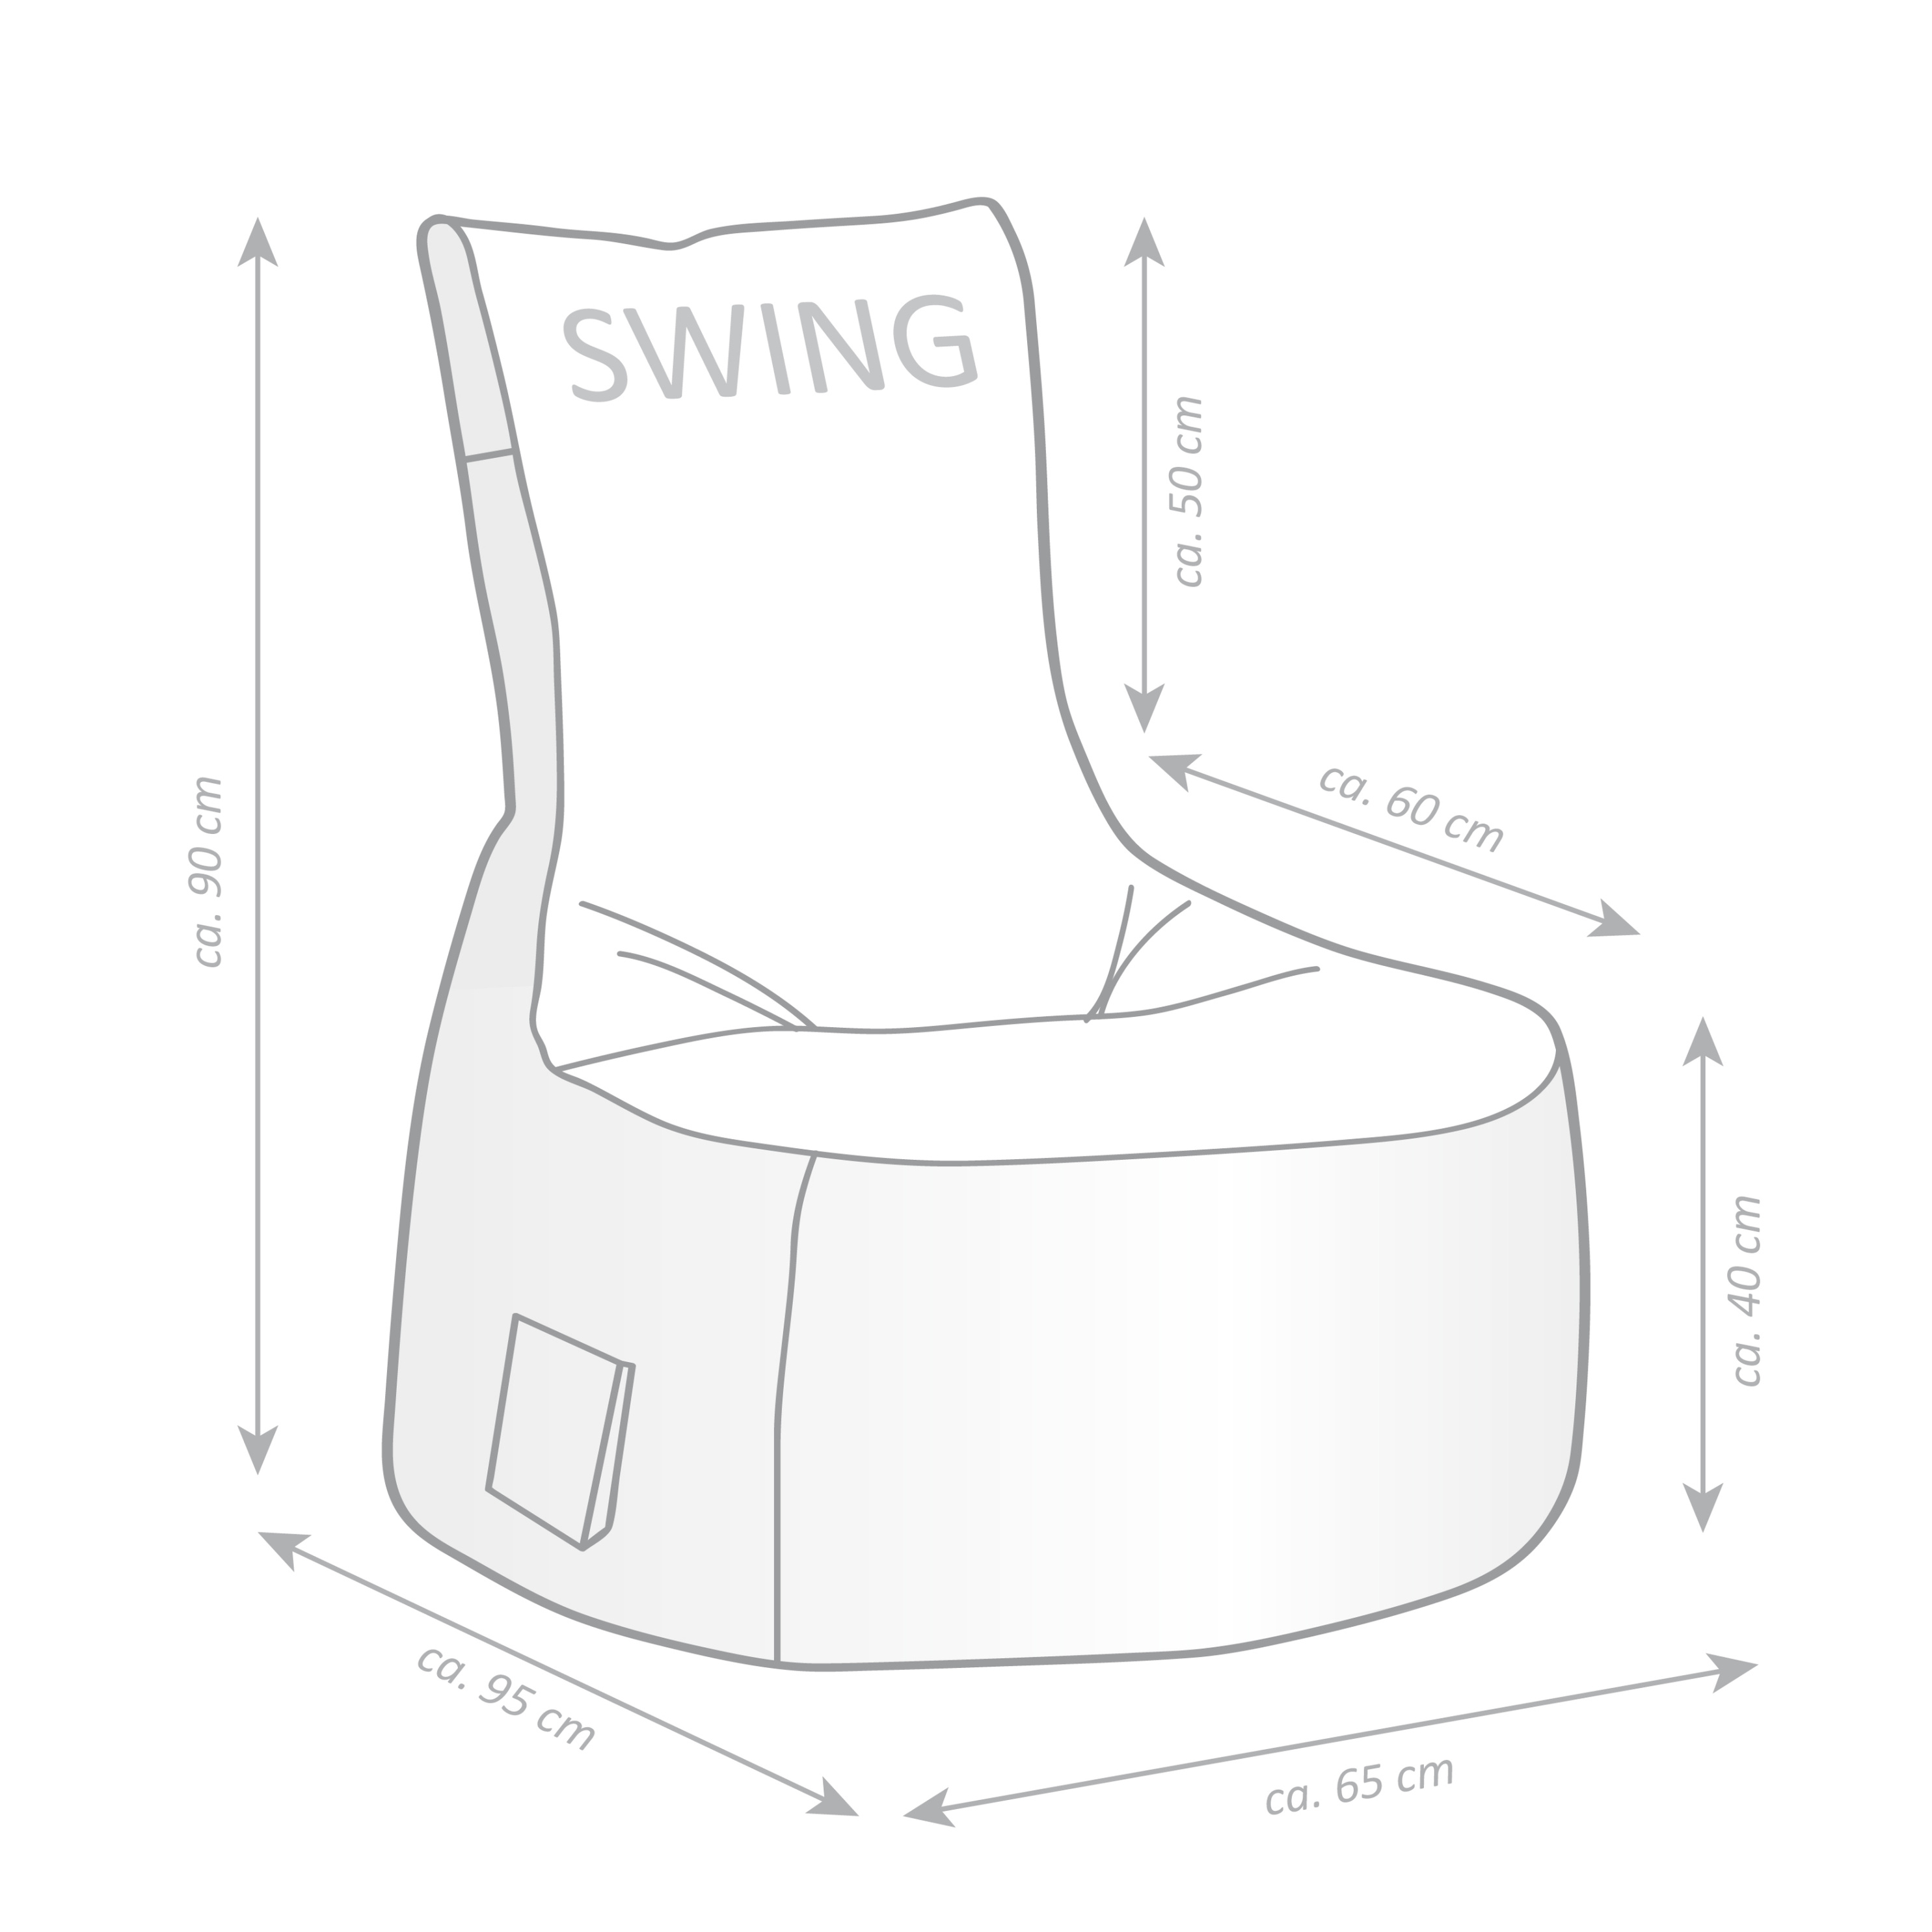 Sitzsack Swing SCUBA Weltbild.de Farbe: khaki jetzt bei bestellen